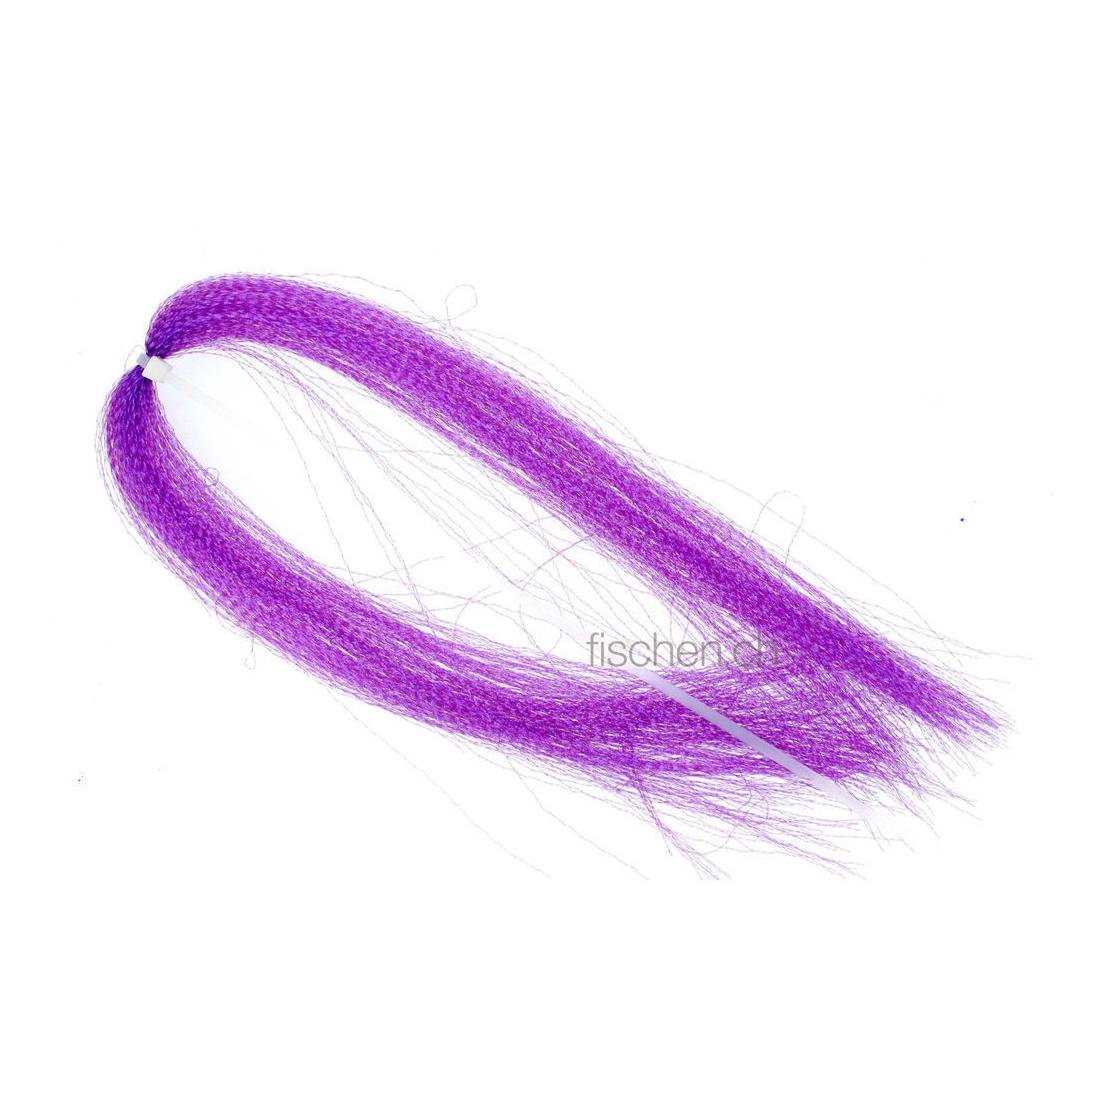 Image of Hareline Dubbin Krystal Flash - UV Purple - Flash bei fischen.ch